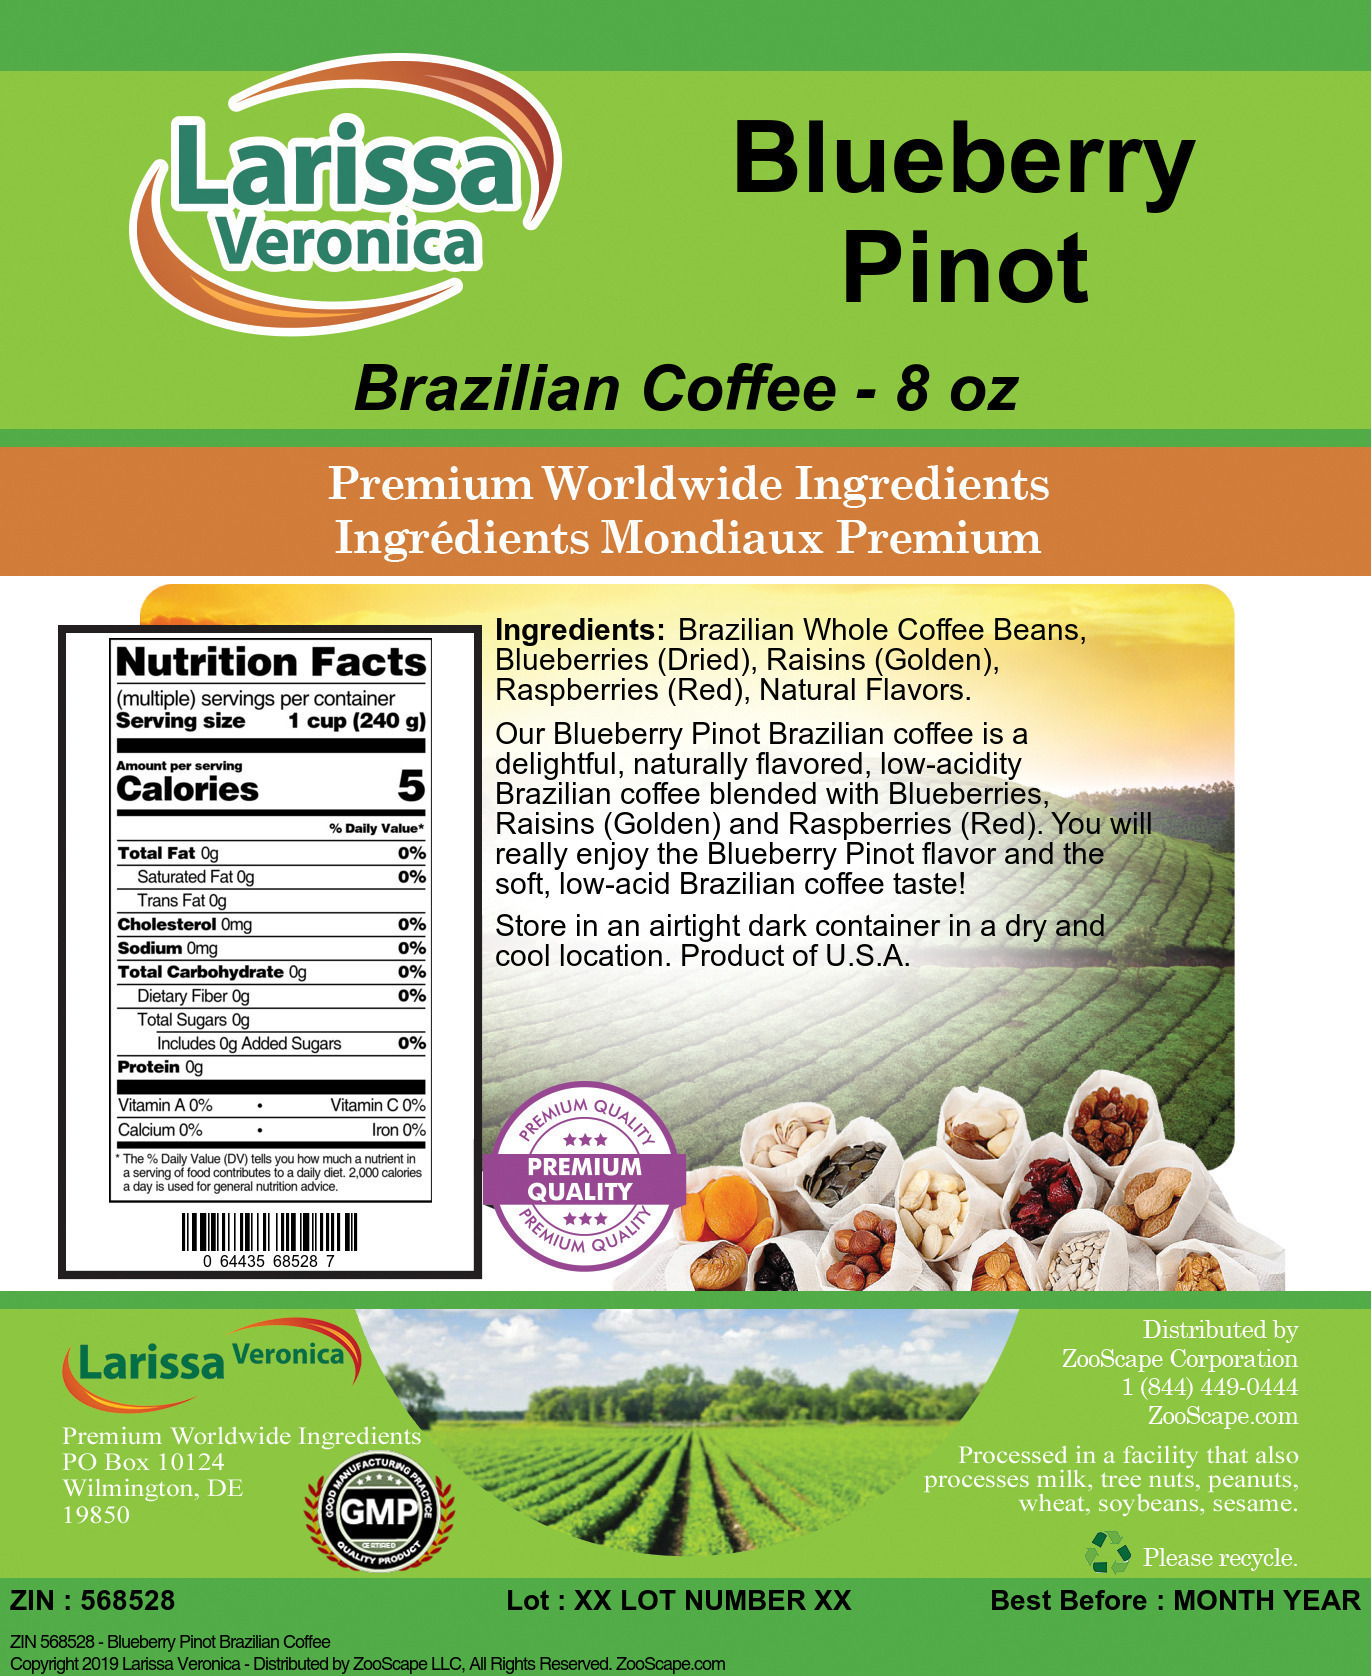 Blueberry Pinot Brazilian Coffee - Label